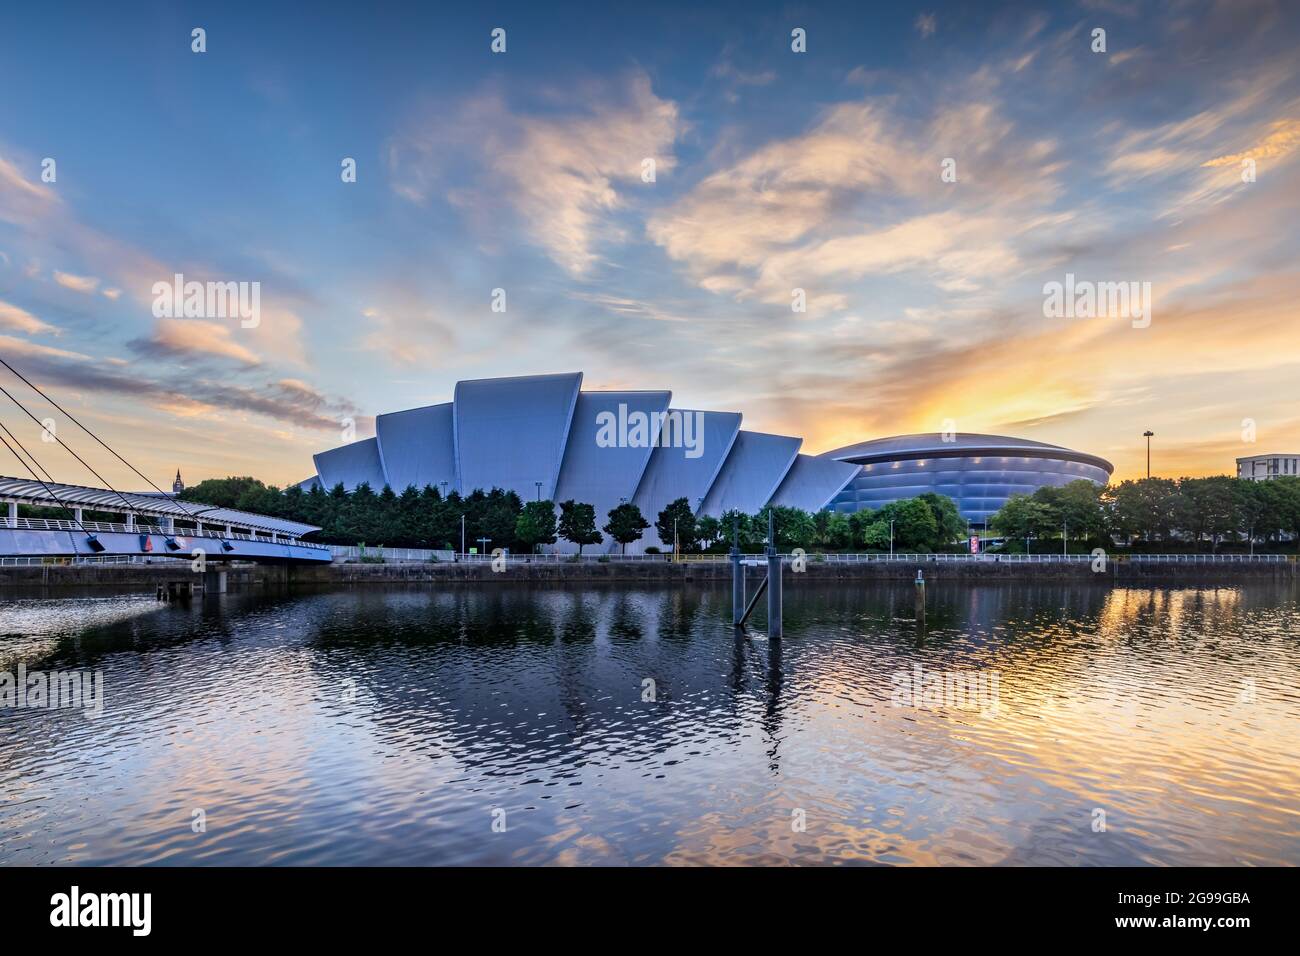 Les bâtiments SEC Armadillo et SSE Hydro sur le front de mer de Clyde à Glasgow, pris au lever du soleil. Banque D'Images